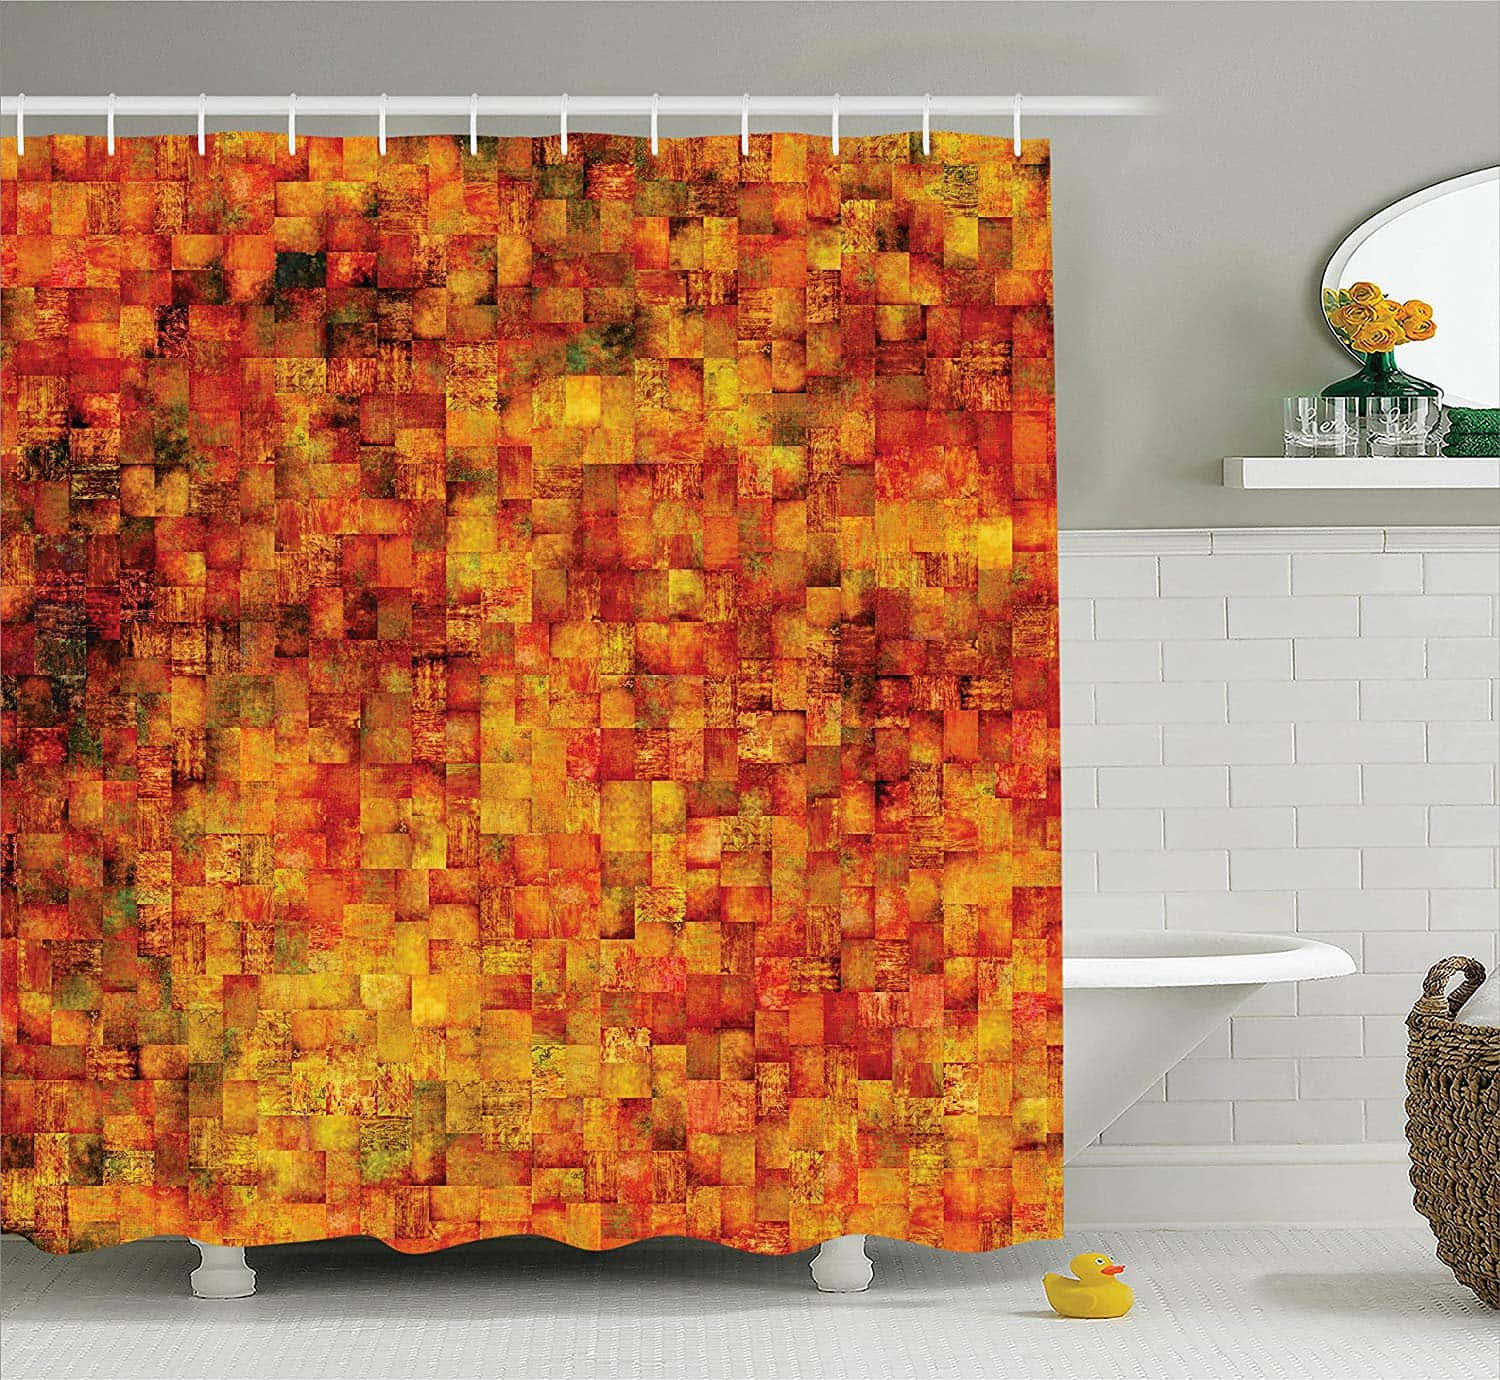 Fondode Pantalla En Tono Naranja Quemado Con Estampado De Mosaico